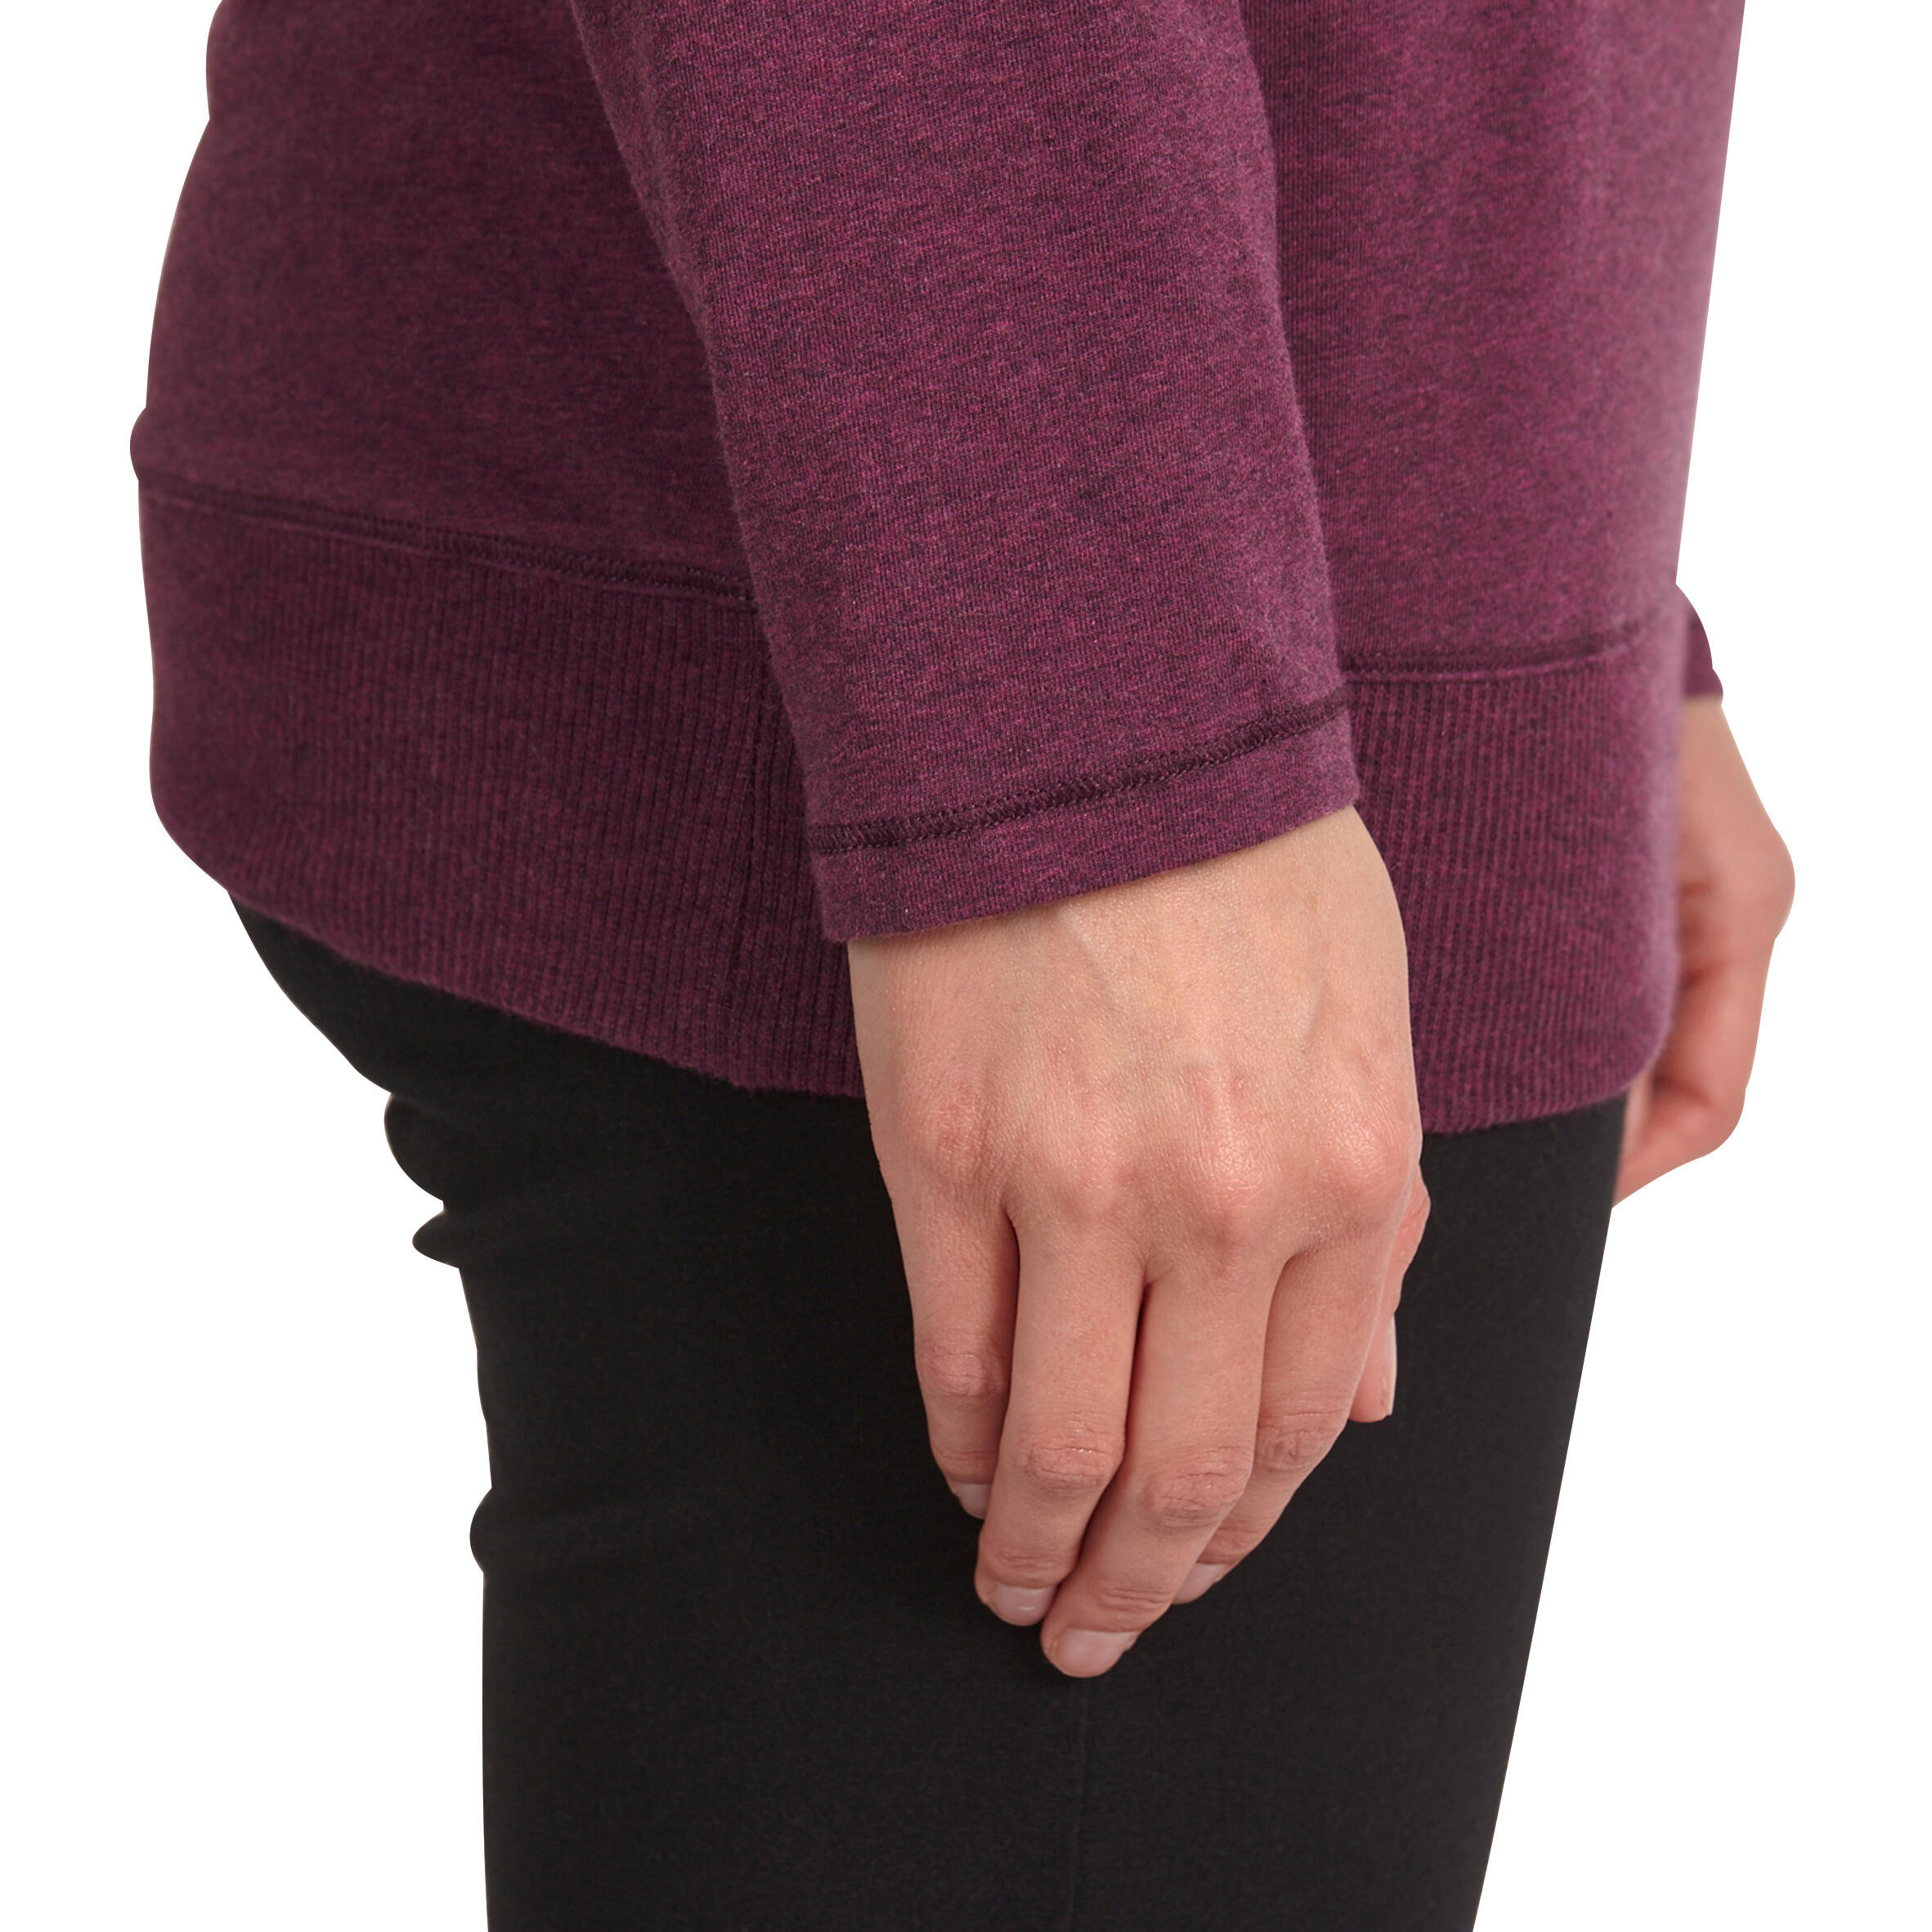 Women's Organic Cotton Long-Sleeved Yoga T-Shirt - Mottled Burgundy 8/12